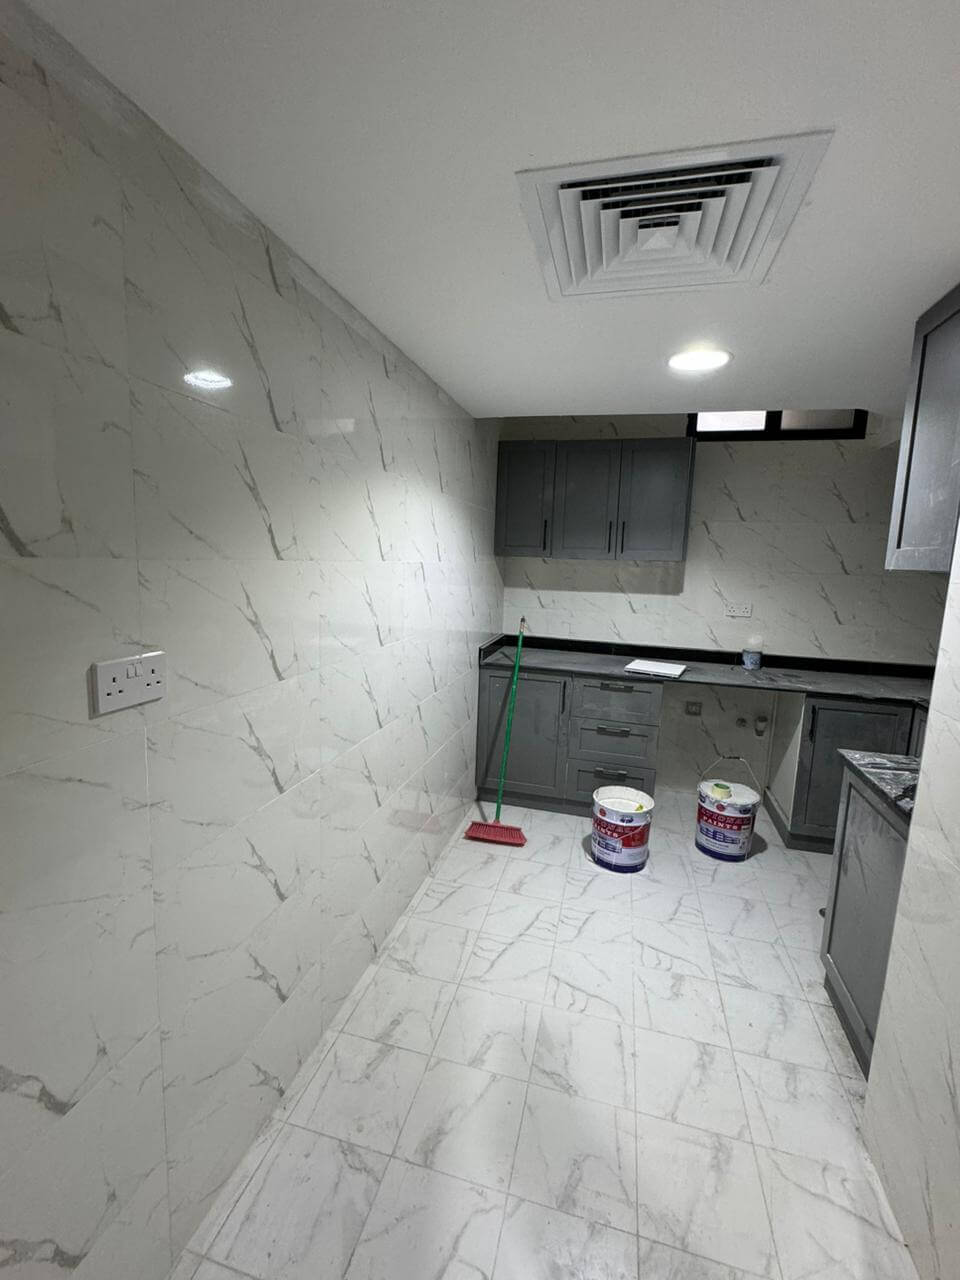 غرف مميزة للإيجار الشهري في مردف دبي - Rooms for monthly rent in Mirdif Dubai